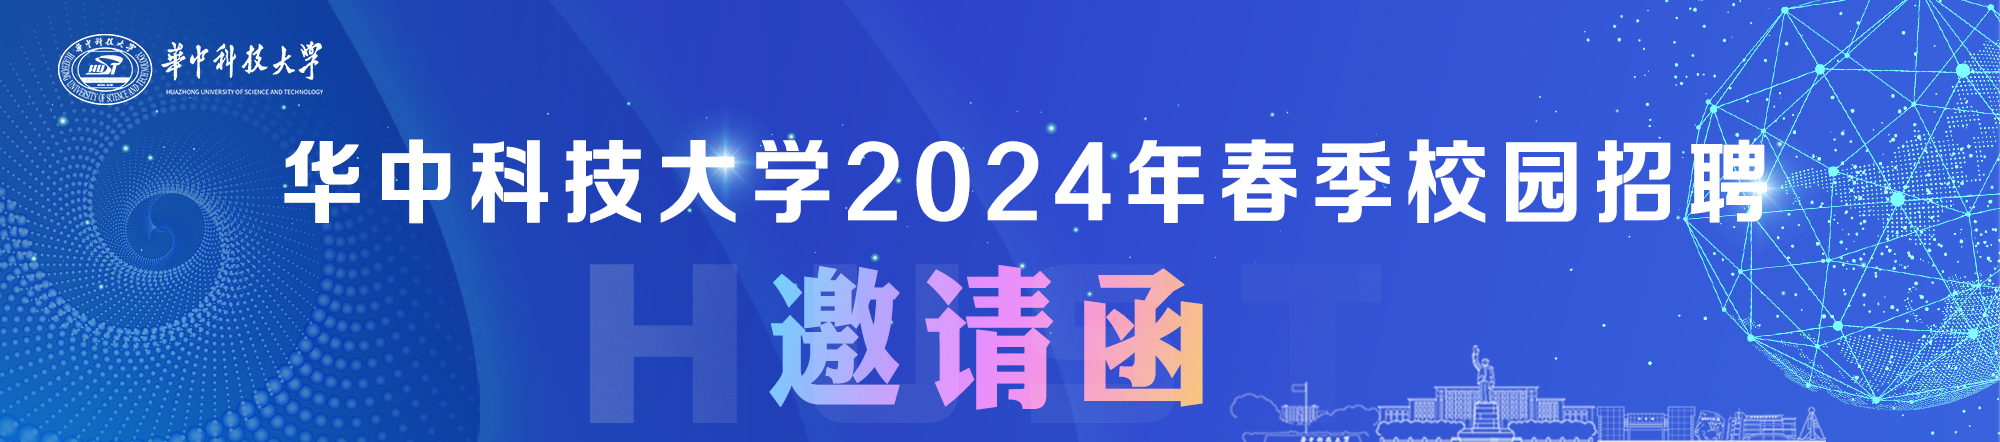 华中科技大学2024年春季校园招聘邀请函